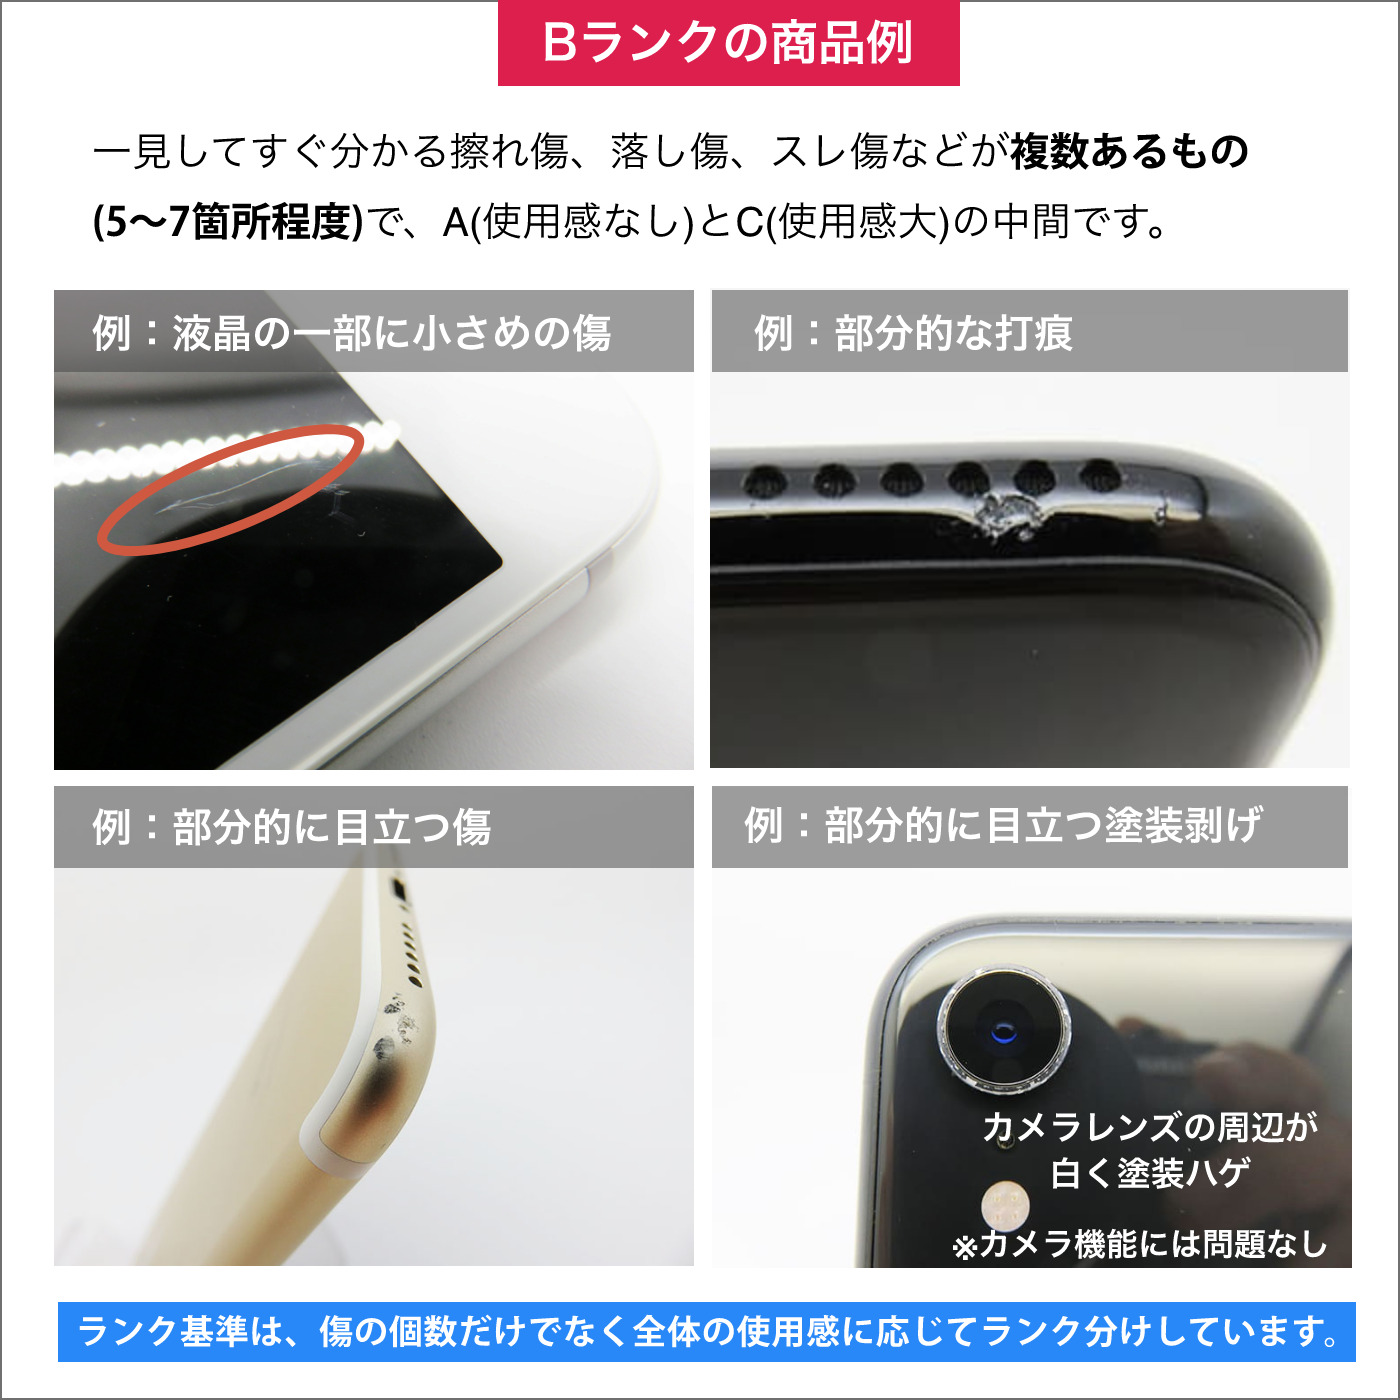 iPad Pro 9.7インチ 32GB シルバー Wi-Fi｜中古スマホ・中古携帯の激安 ...